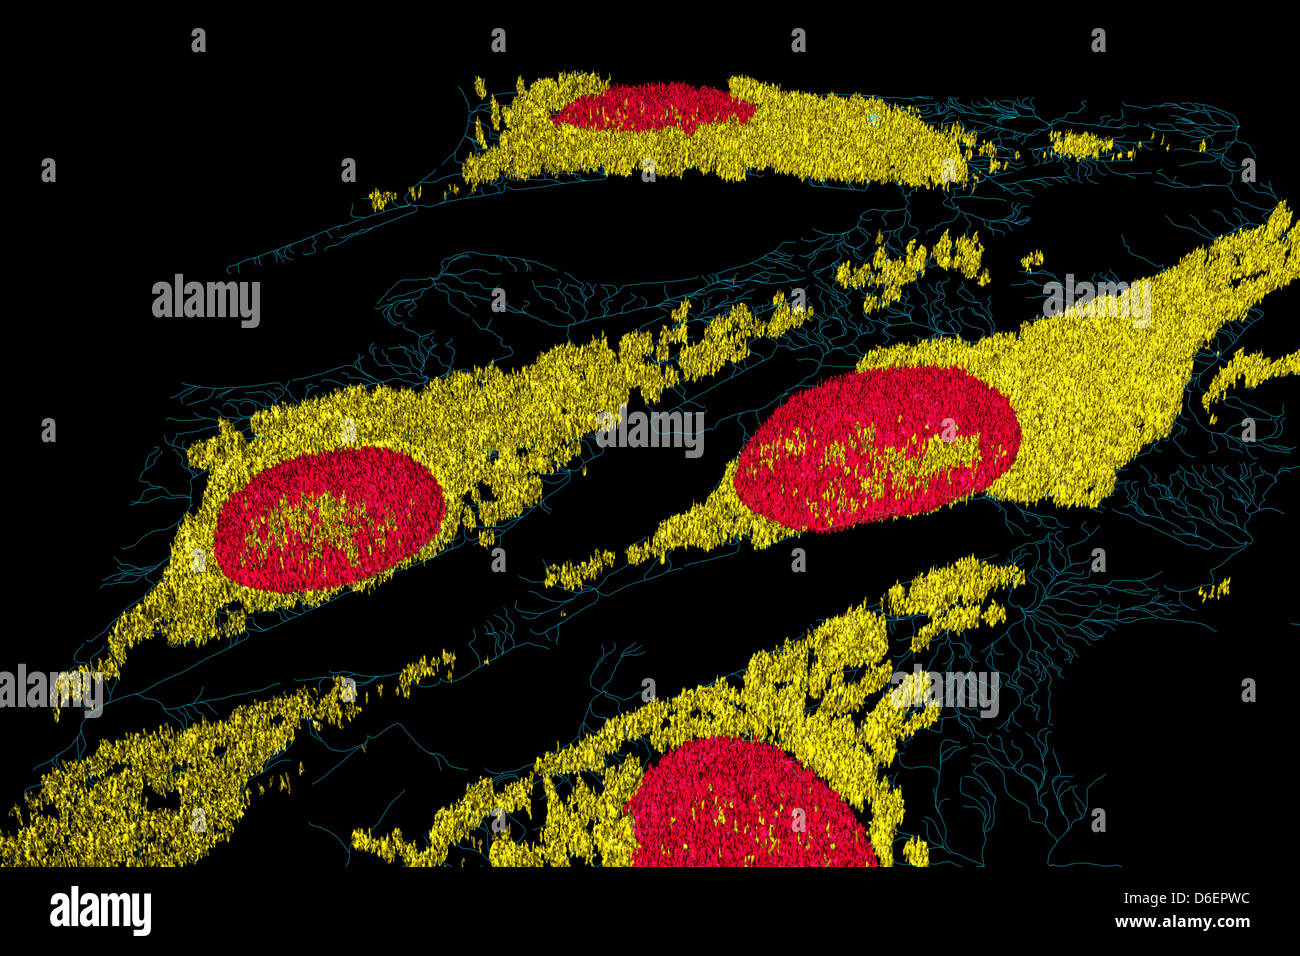 Microfilamenti (blu), mitocondri (giallo), e nuclei (rosso) in cellule di fibroblasti Foto Stock